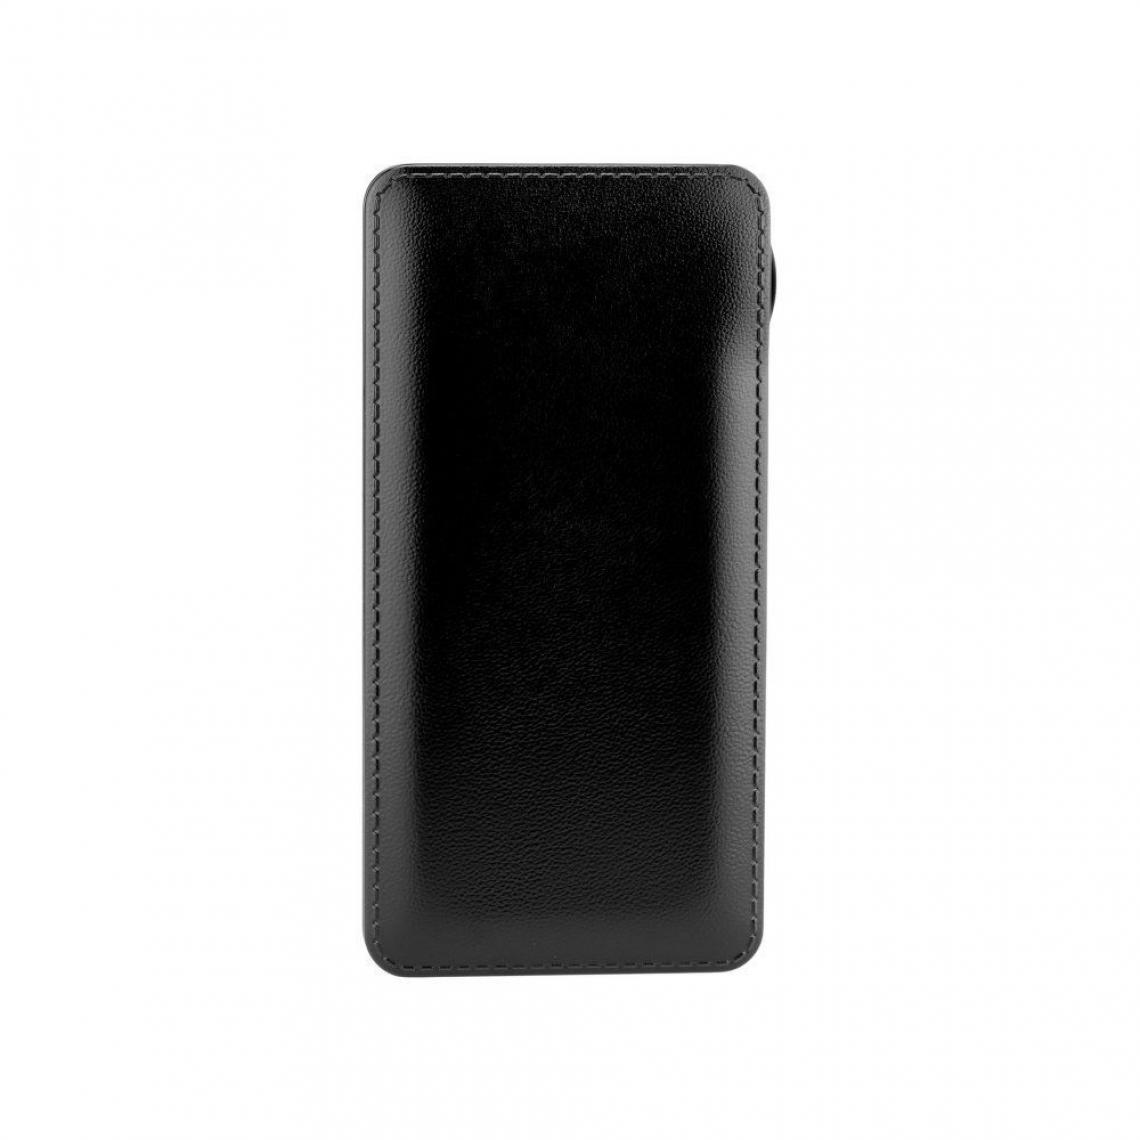 Ozzzo - Chargeur batterie externe 20000 mAh powerbank ozzzo noir pour Sharp Aquos D10 - Autres accessoires smartphone